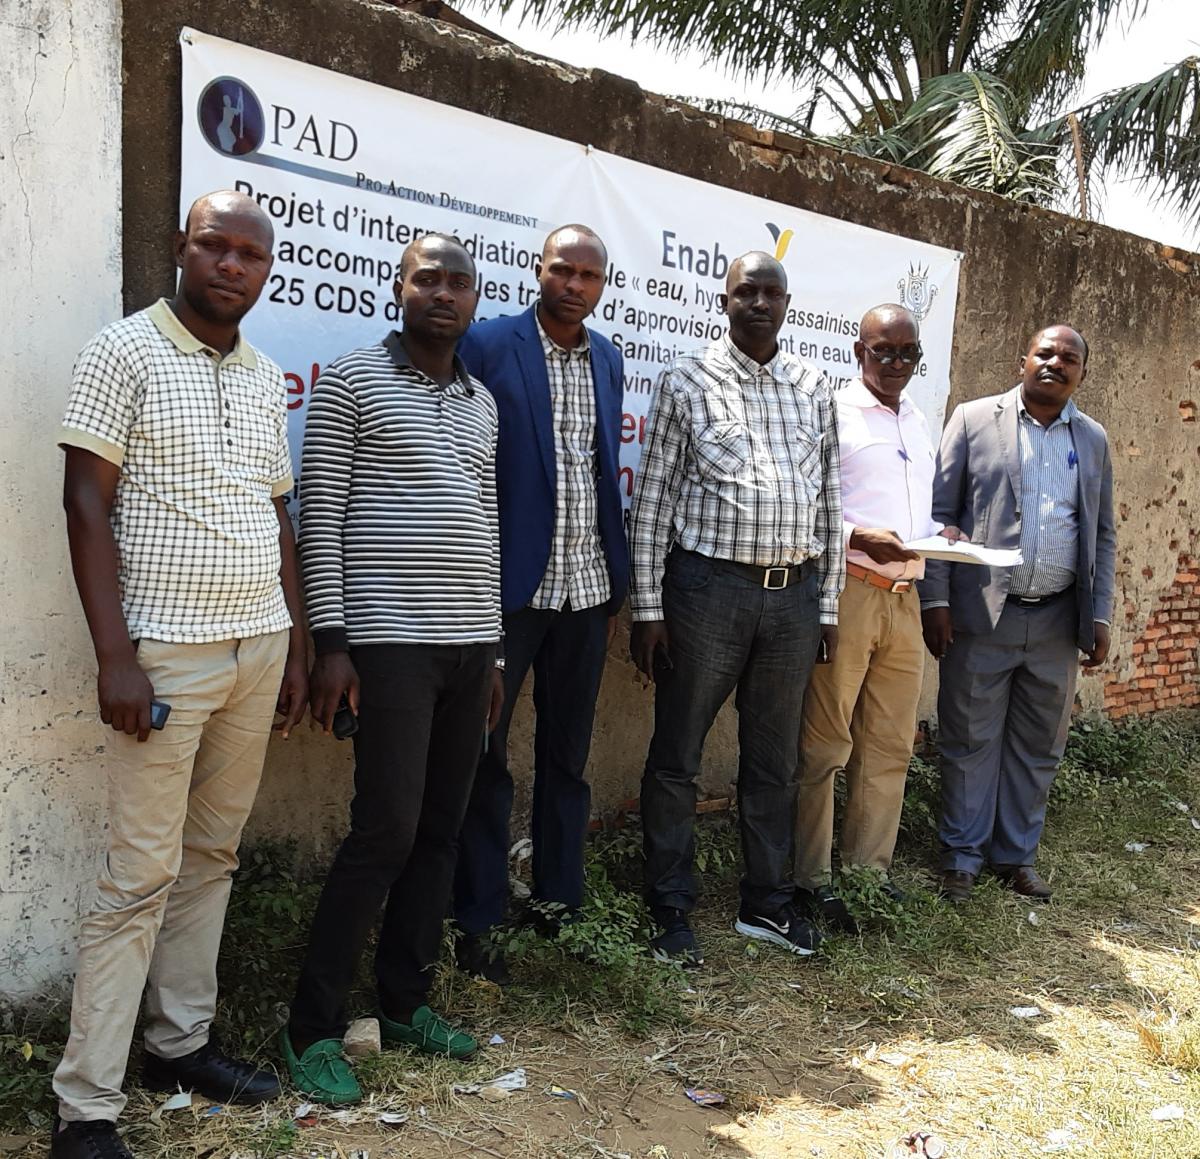 Des acteurs locaux renforcés et équipés pour une gestion améliorée de l’eau potable dans les Province de Bujumbura et Rumonge